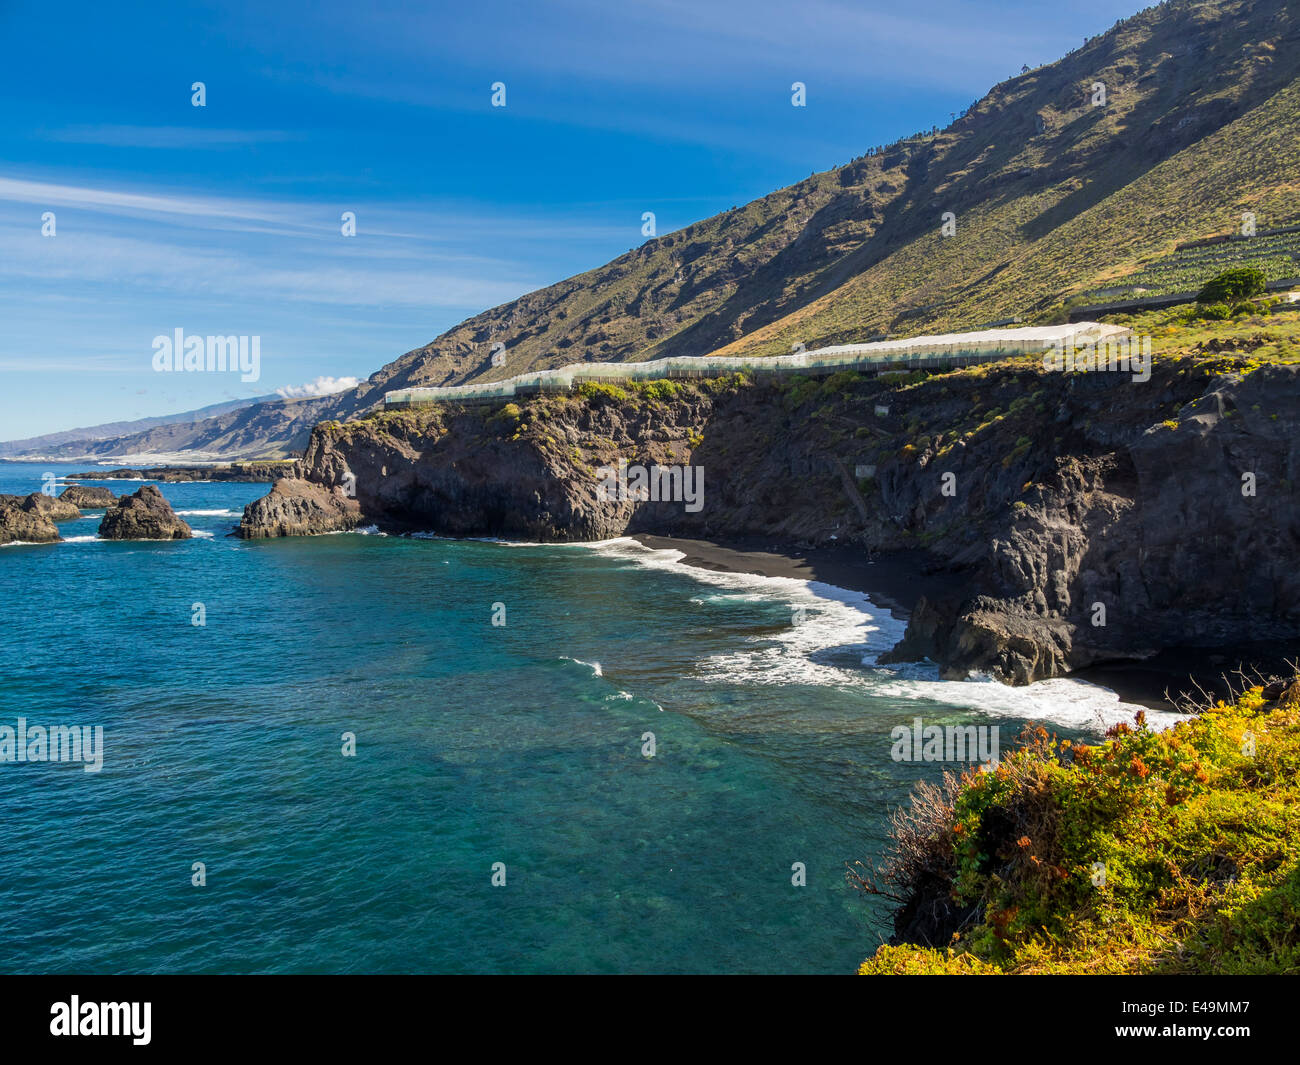 Spain, Canary Islands, La Palma, Cliff coast with banana plantation Stock Photo